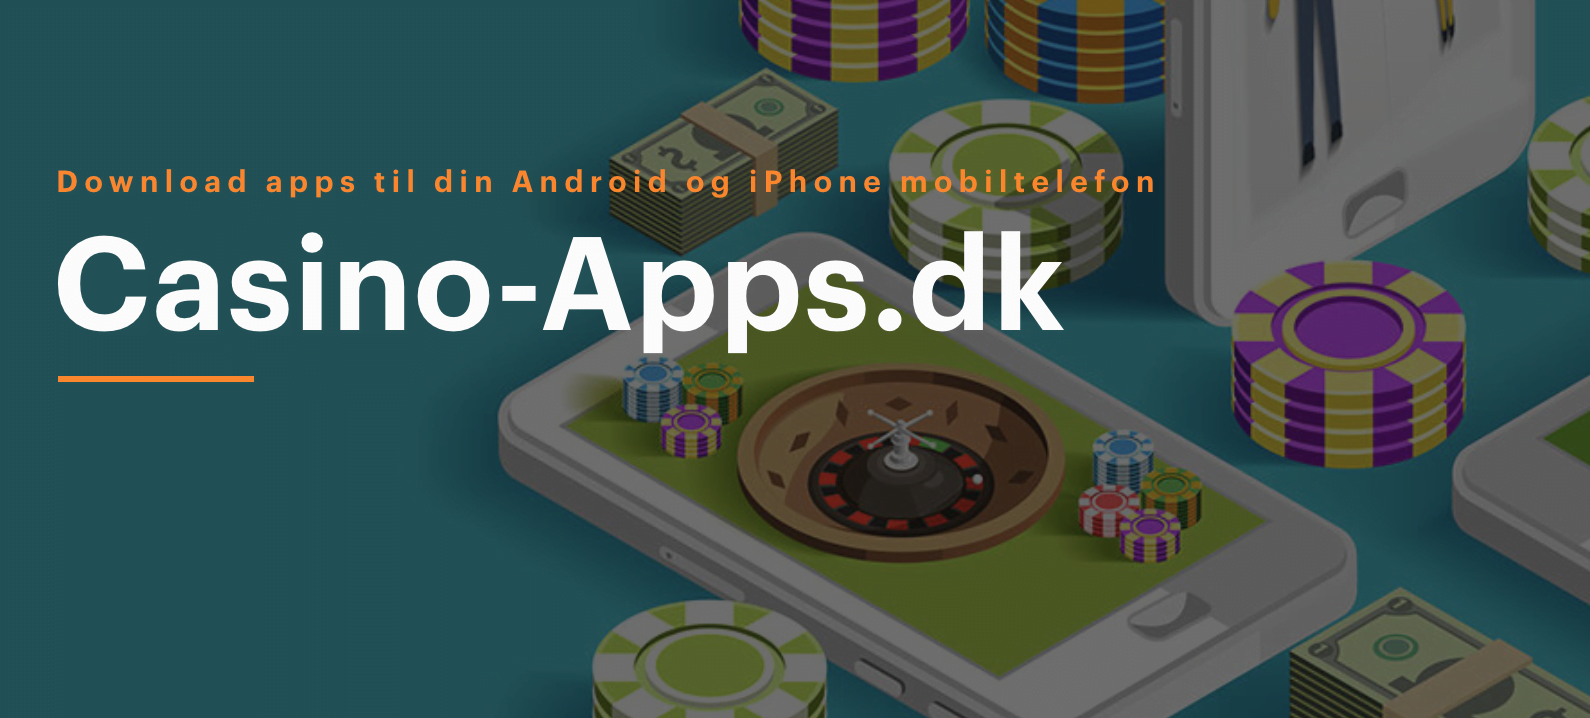 casino-apps.dk